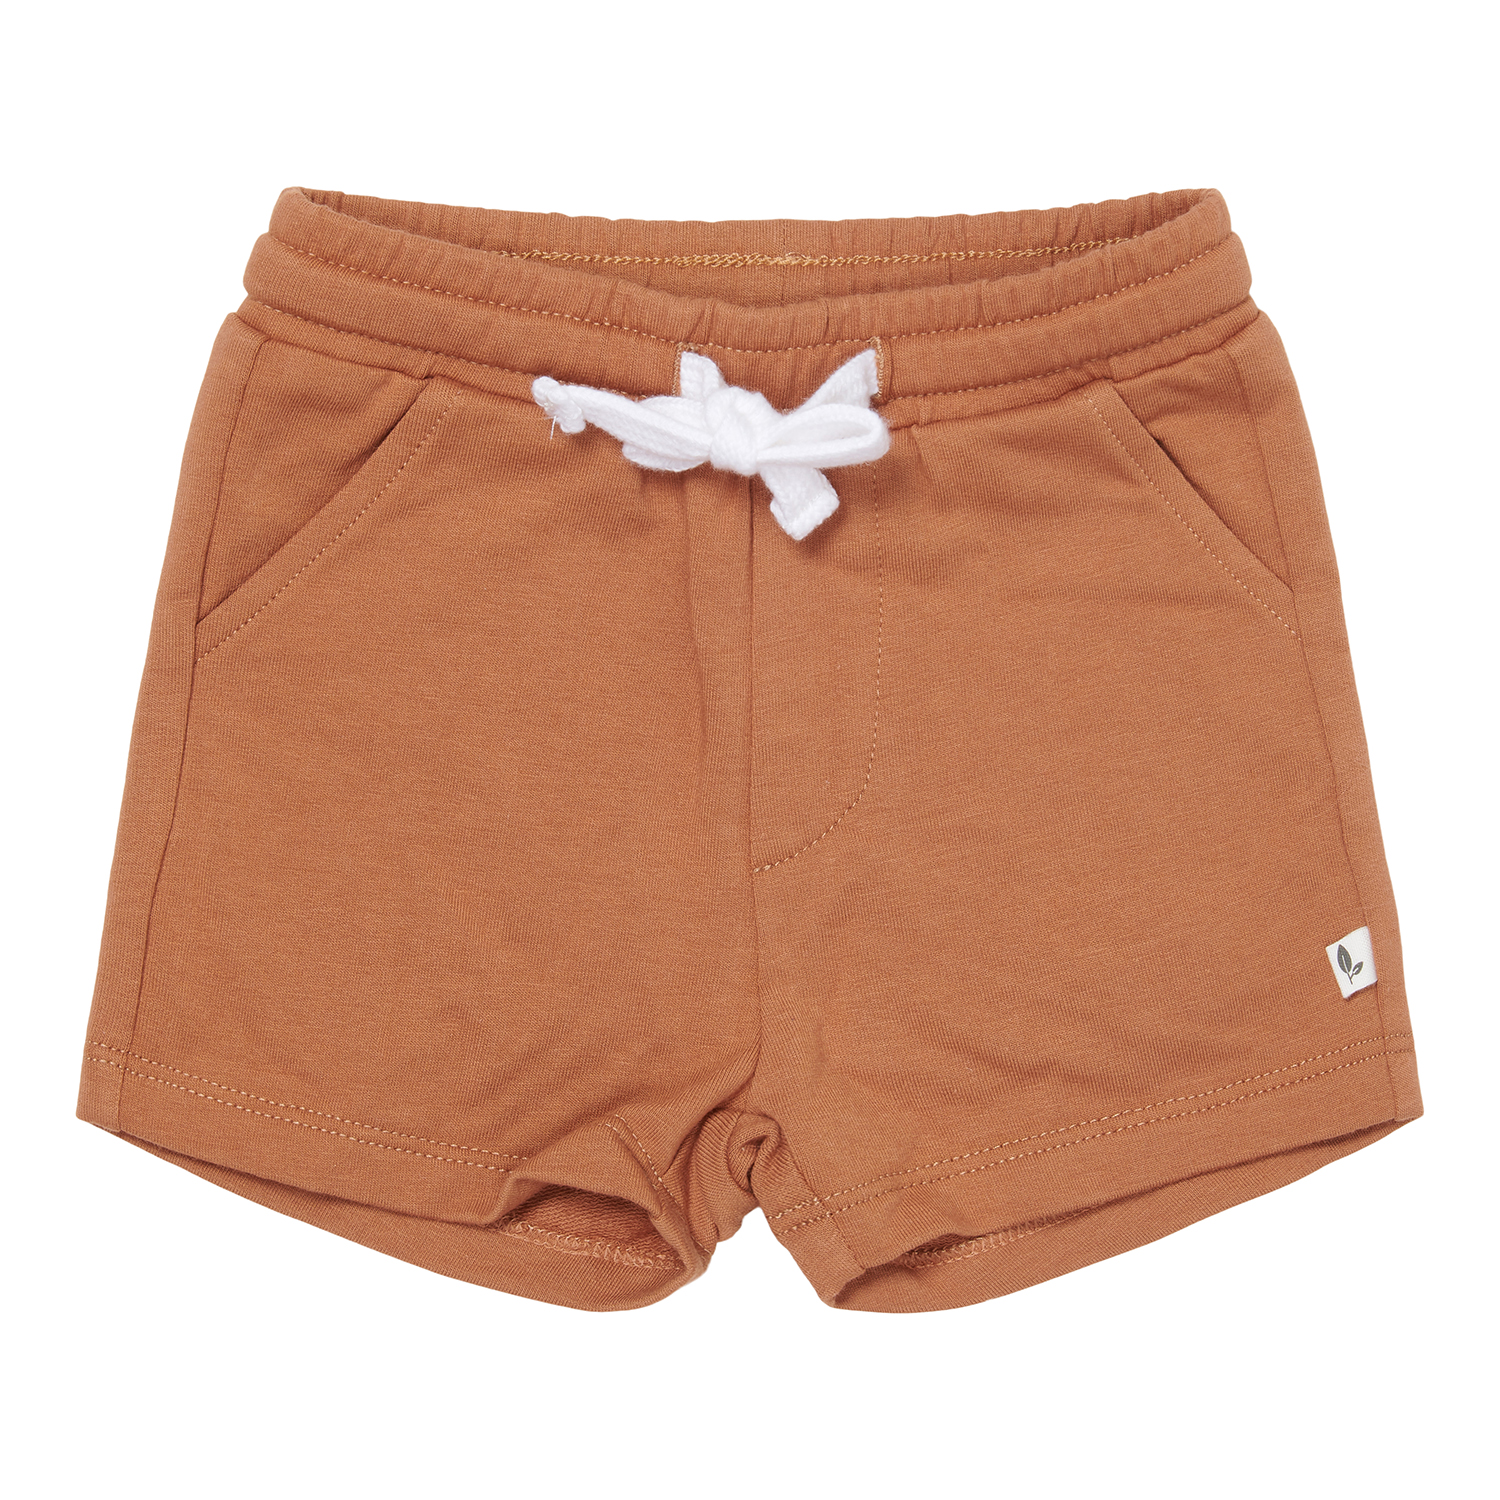 Kurze Hose / Shorts mit Taschen Vintage Sunny Stripes orange (Gr. 74)